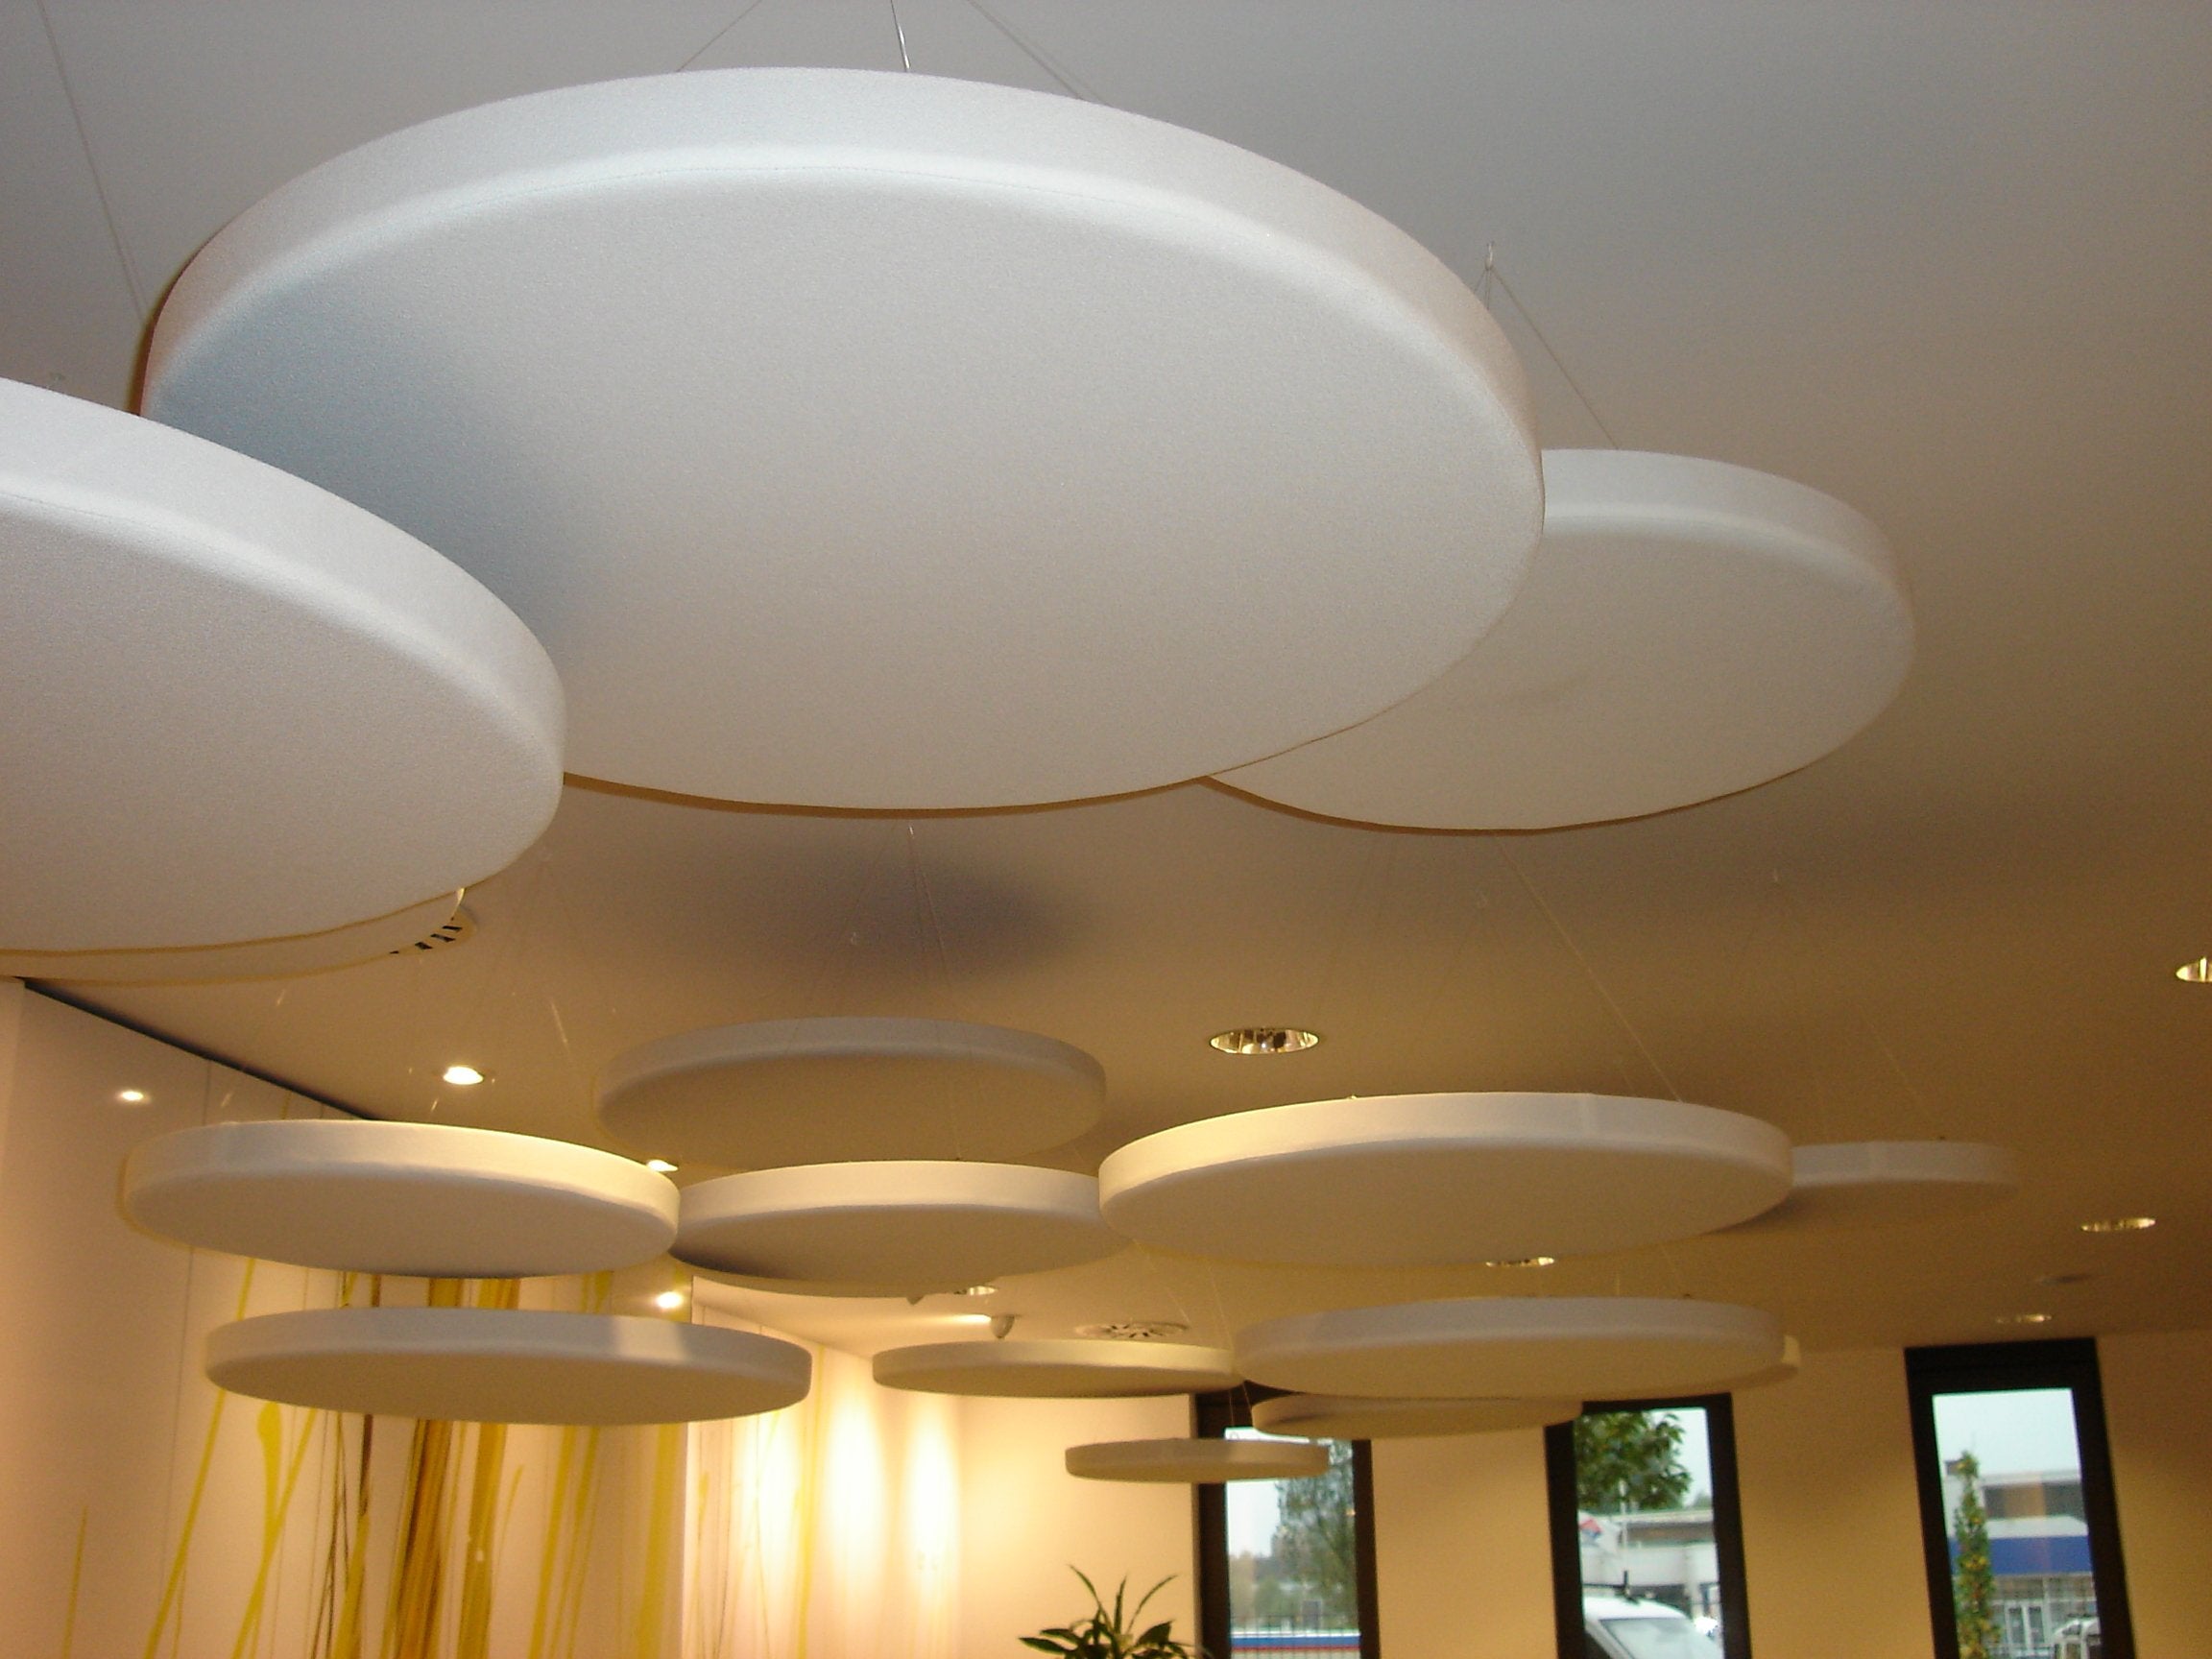 Cloud9 60cm Ceiling Suspended Acoustic Panel - Advanced Acoustics